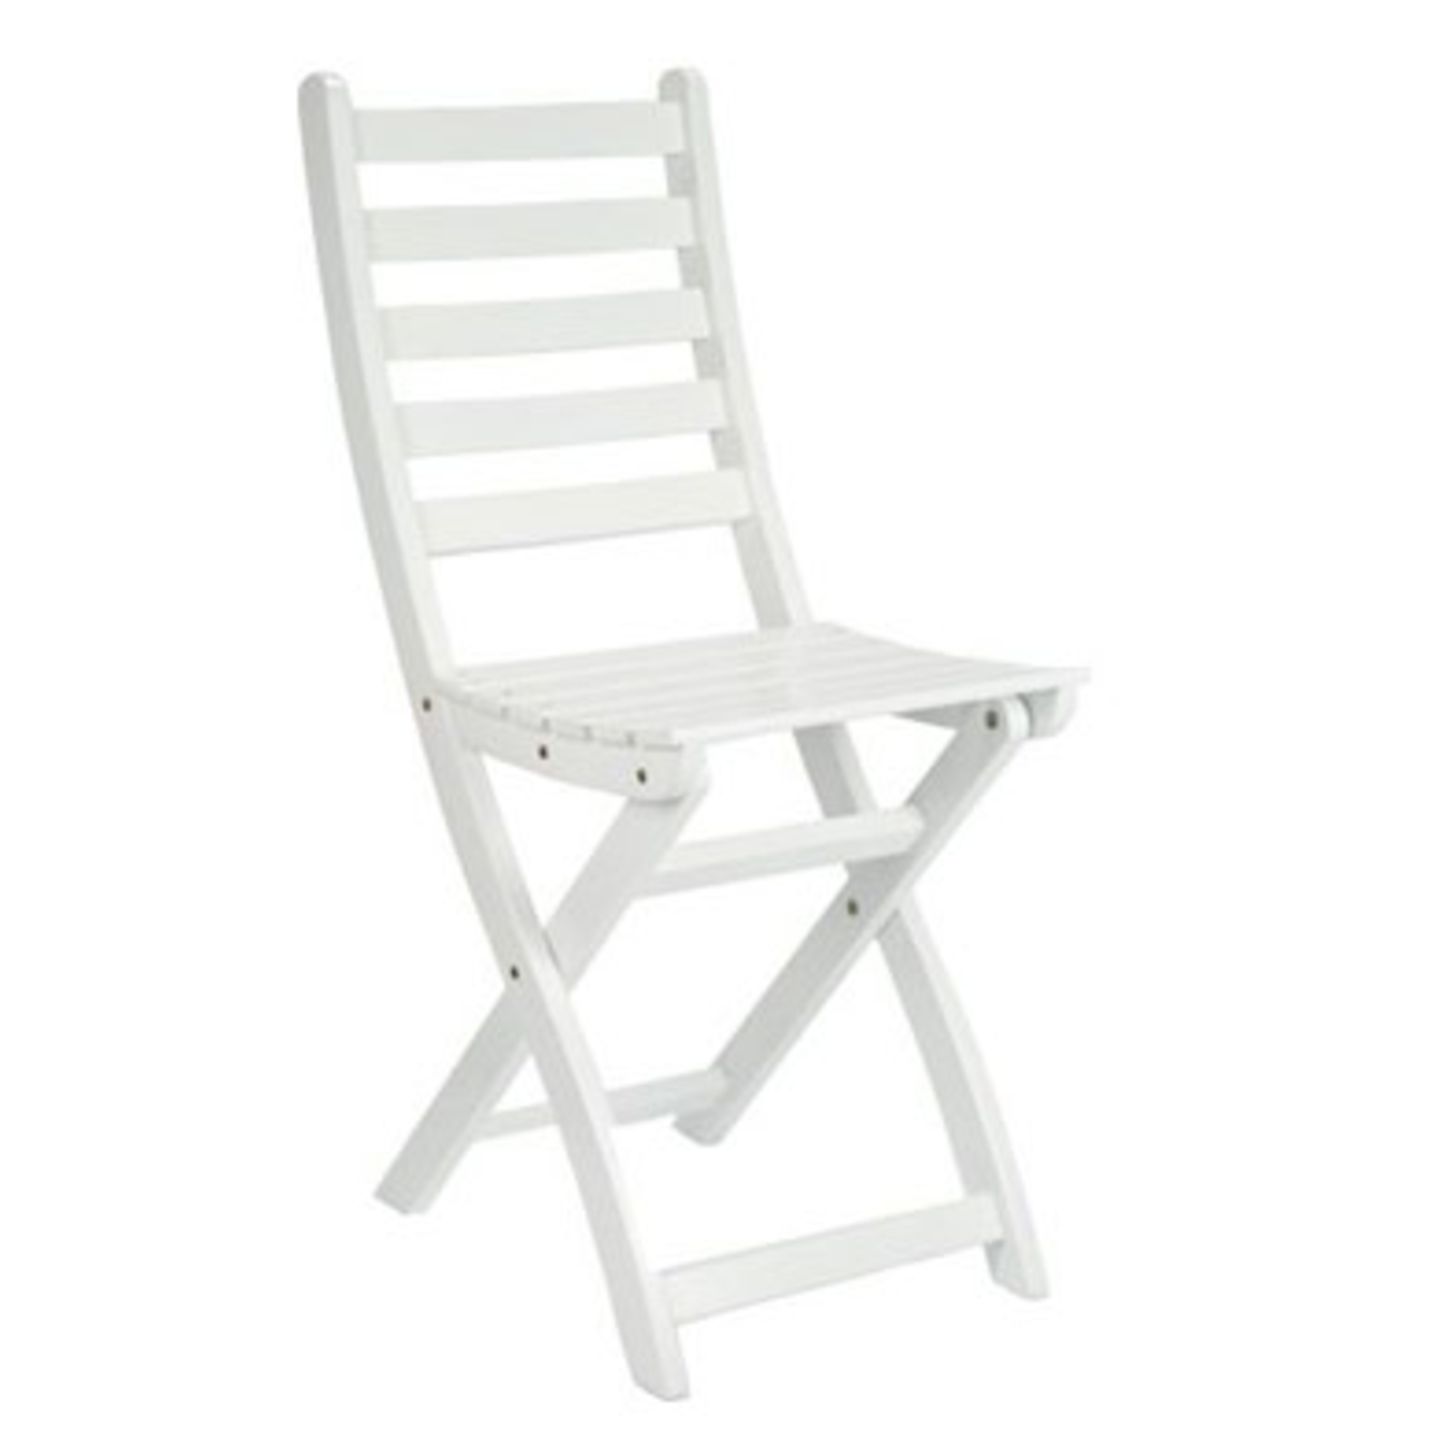 Praktischer und bequemer Klappstuhl in Weiß, Höhe 86 cm, 29,90 Euro zzgl. Versandkosten, zu bestellen unter >> www.butlers.de/shop